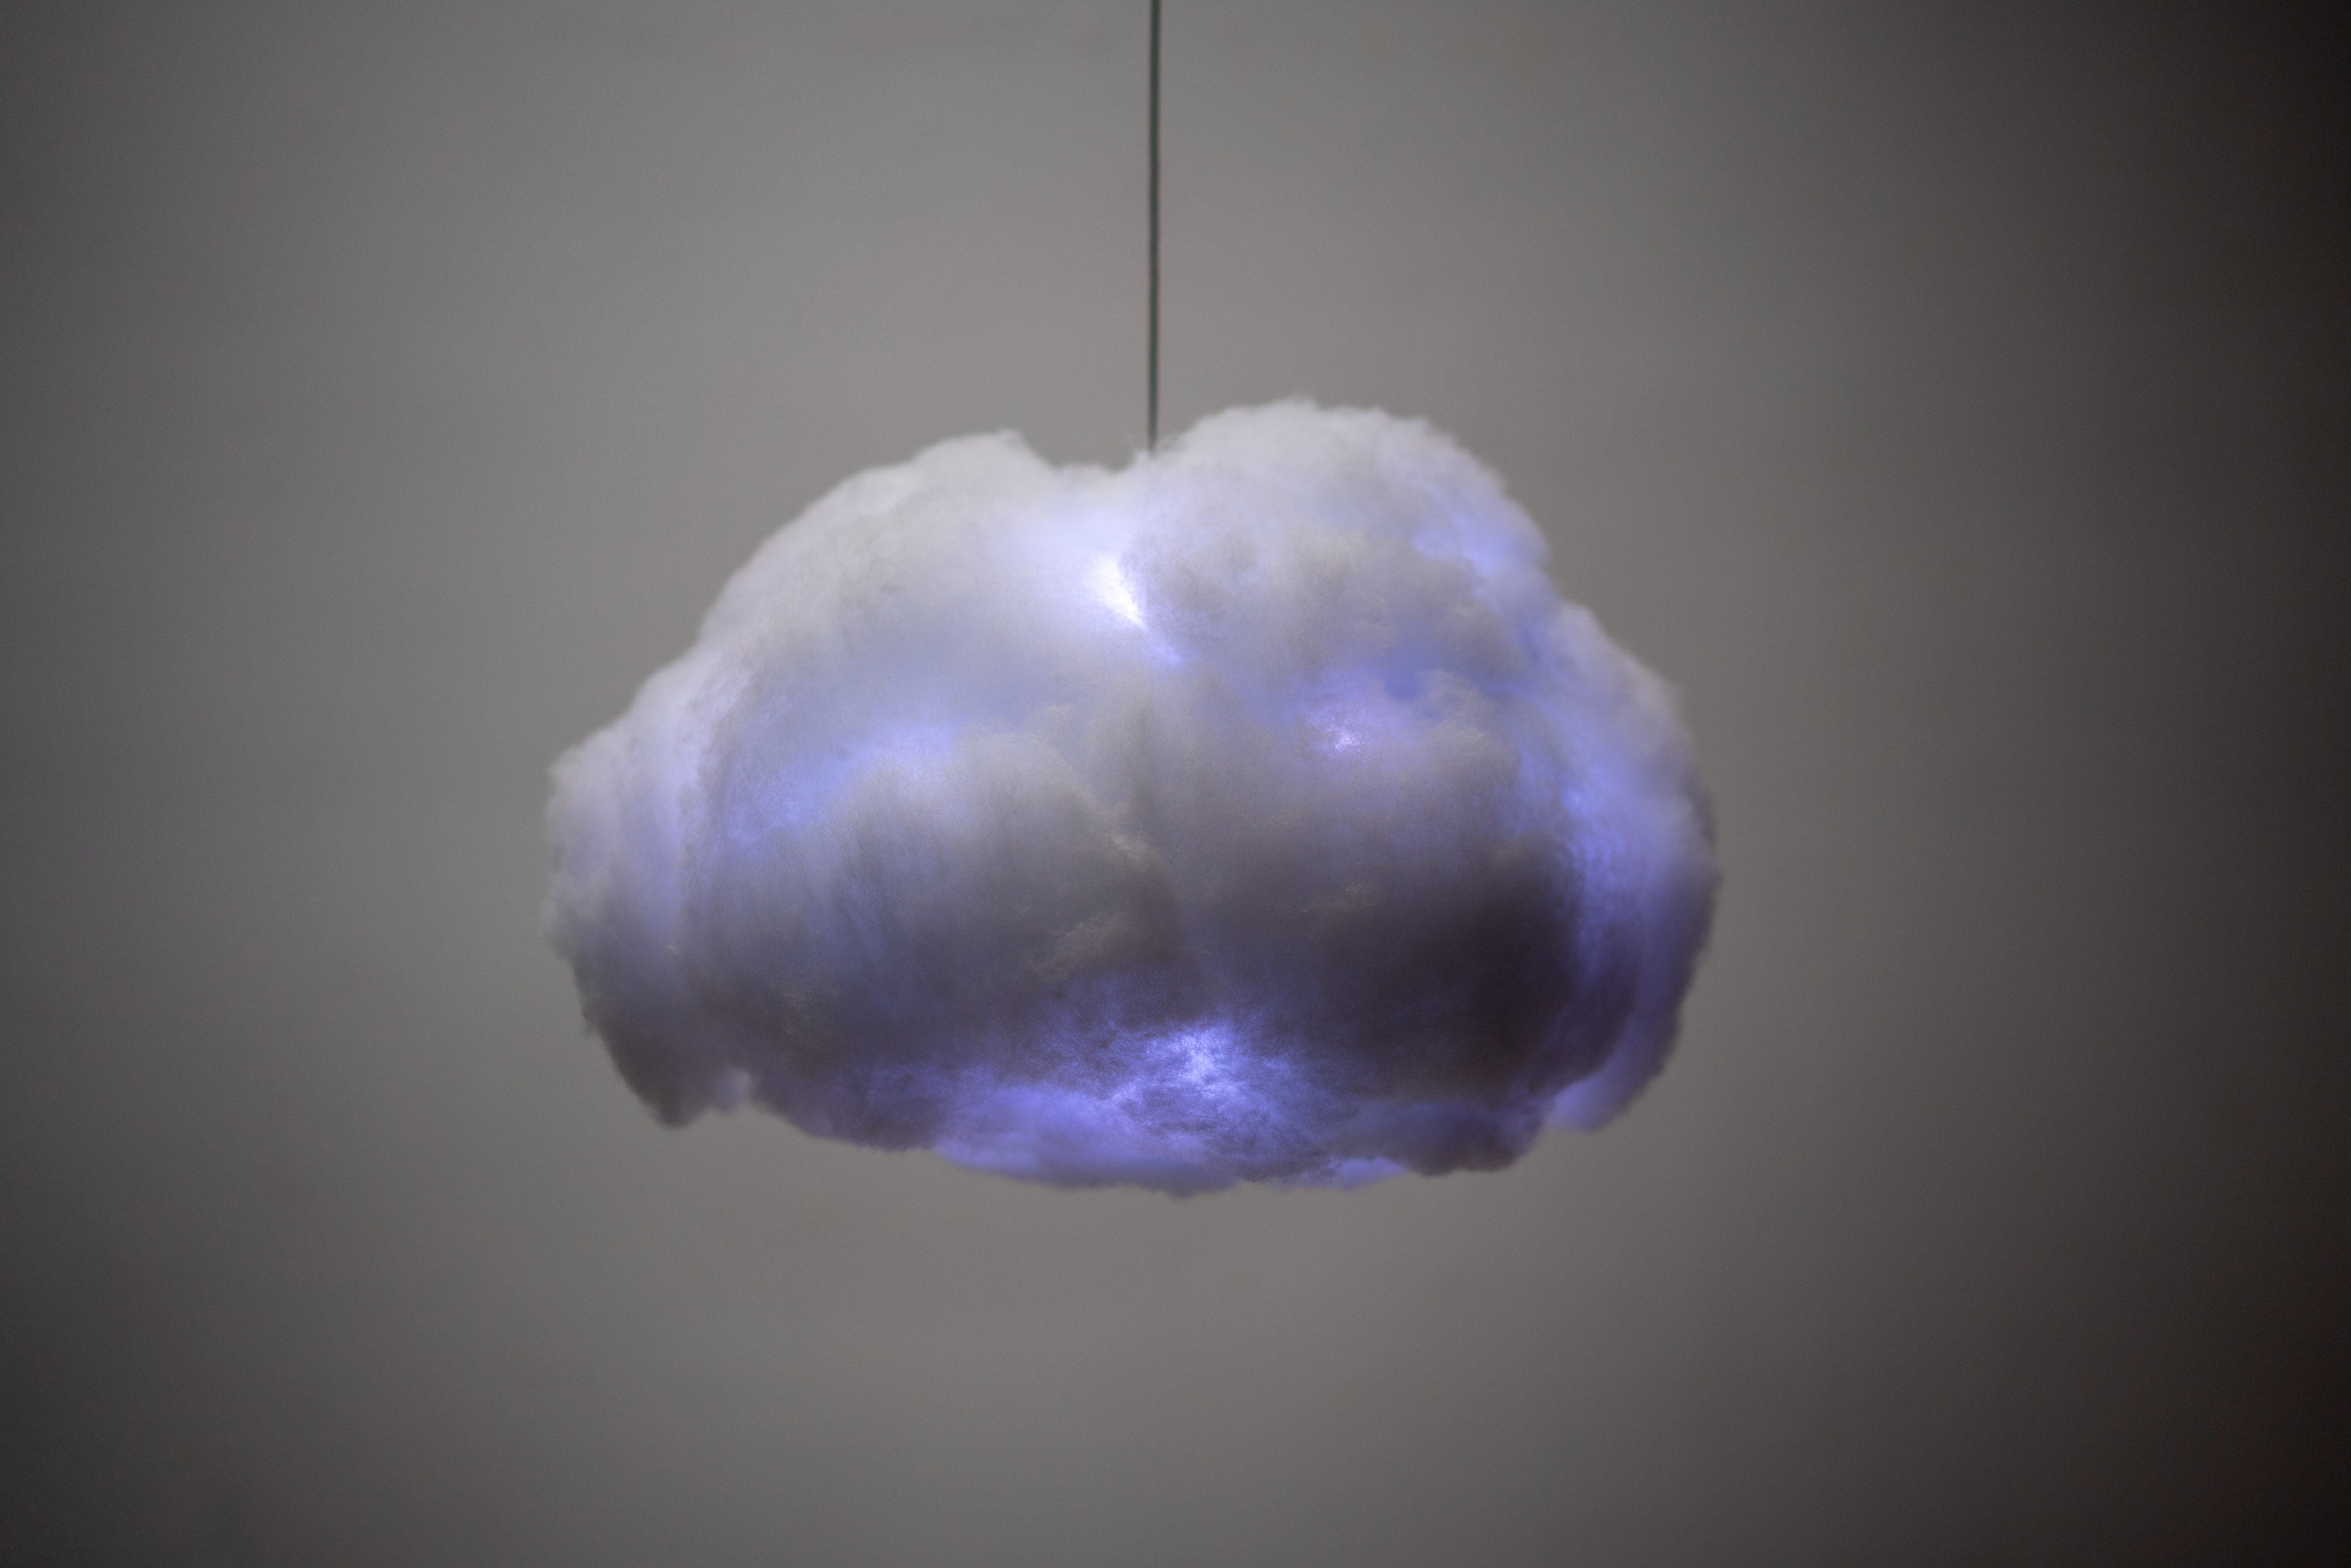 Die Interactive Cloud gehört zu einer Reihe von Beleuchtungssystemen, die von der Magie der Wolken inspiriert sind. Sie ist eine LED-Lampe, die über fortschrittliche klangliche und atmosphärische Leuchtmodi verfügt. Erhältlich in den drei Größen